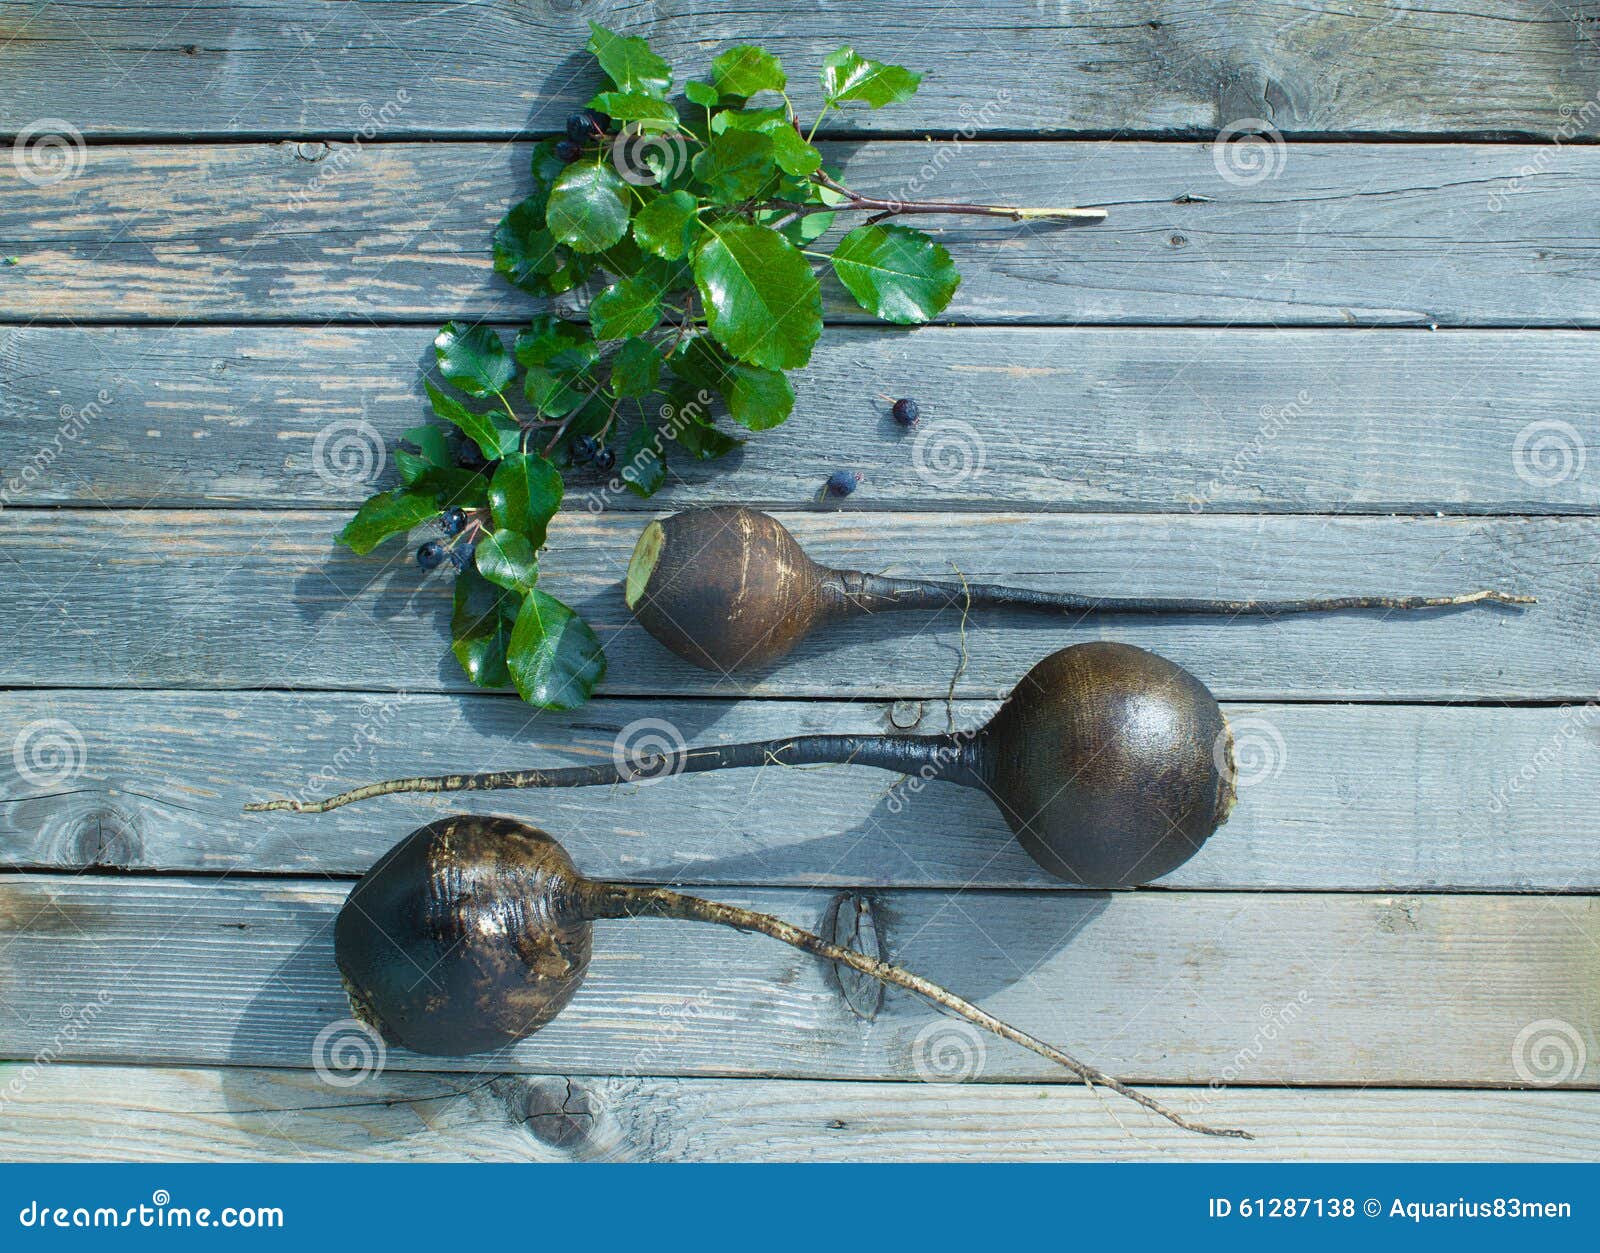 Il concetto della raccolta del ravanello Raccolto di autunno dei ravanelli su una tavola di legno